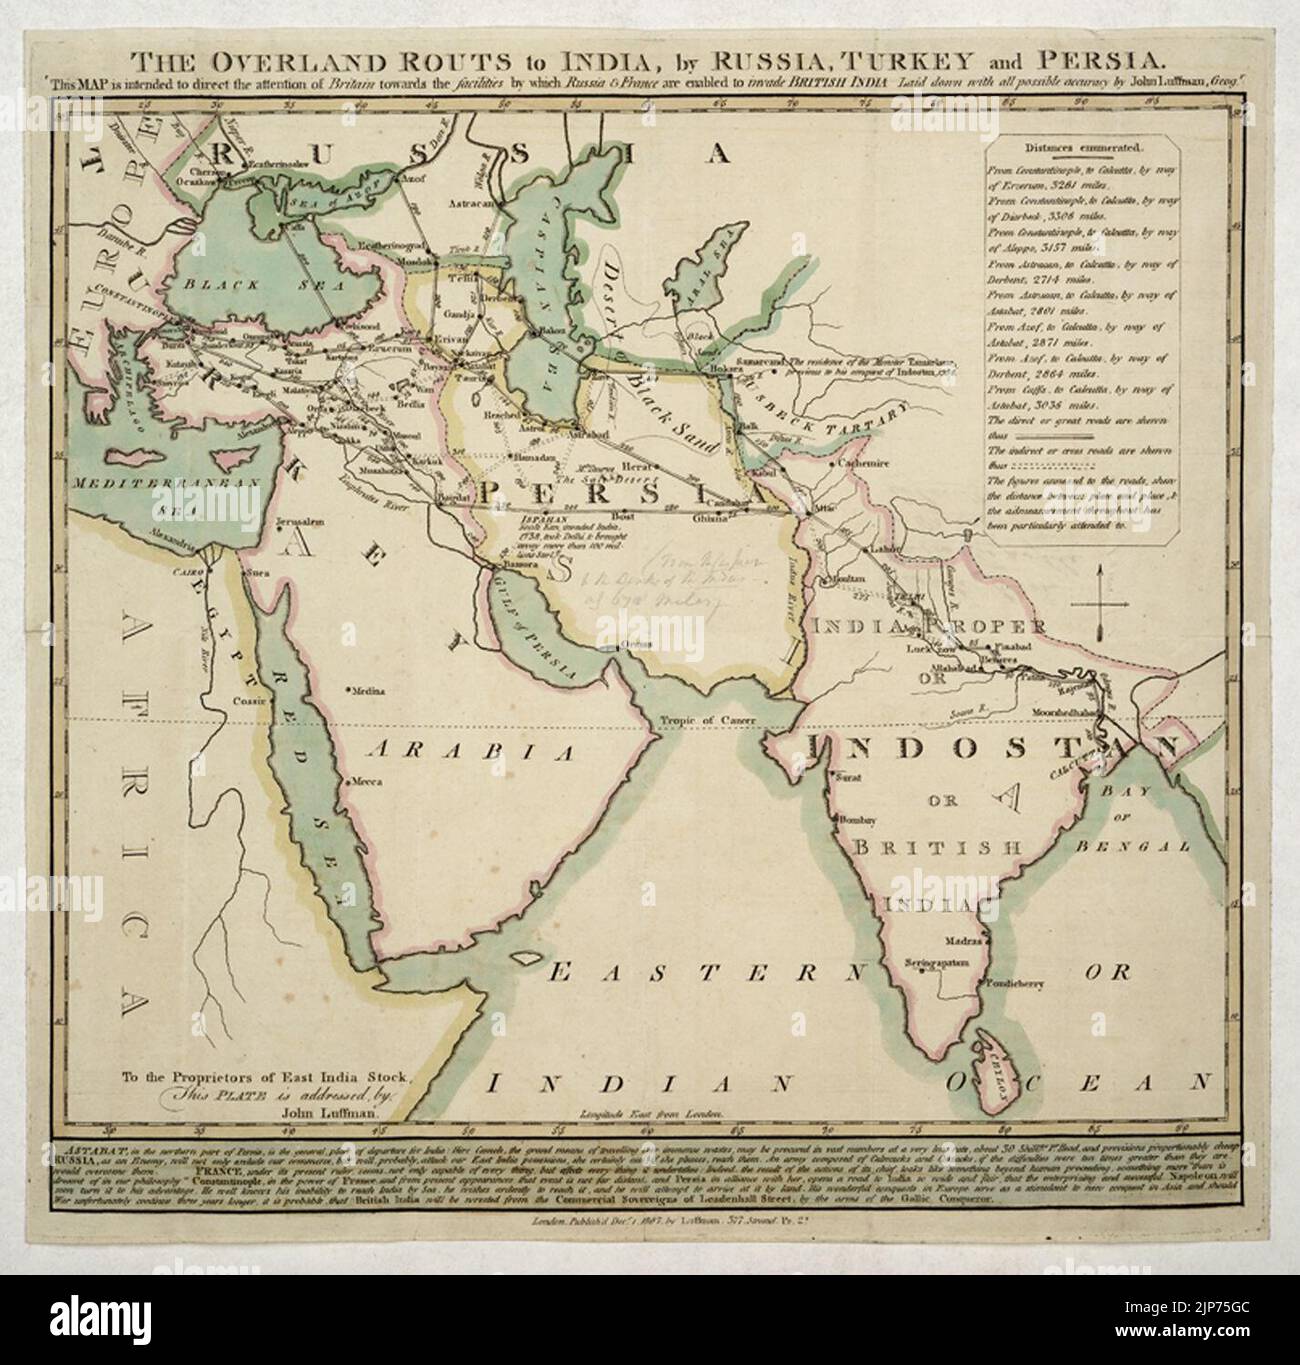 Le rotte terrestri (sic) verso l'India, dalla Russia, dalla Turchia e dalla Persia. Foto Stock